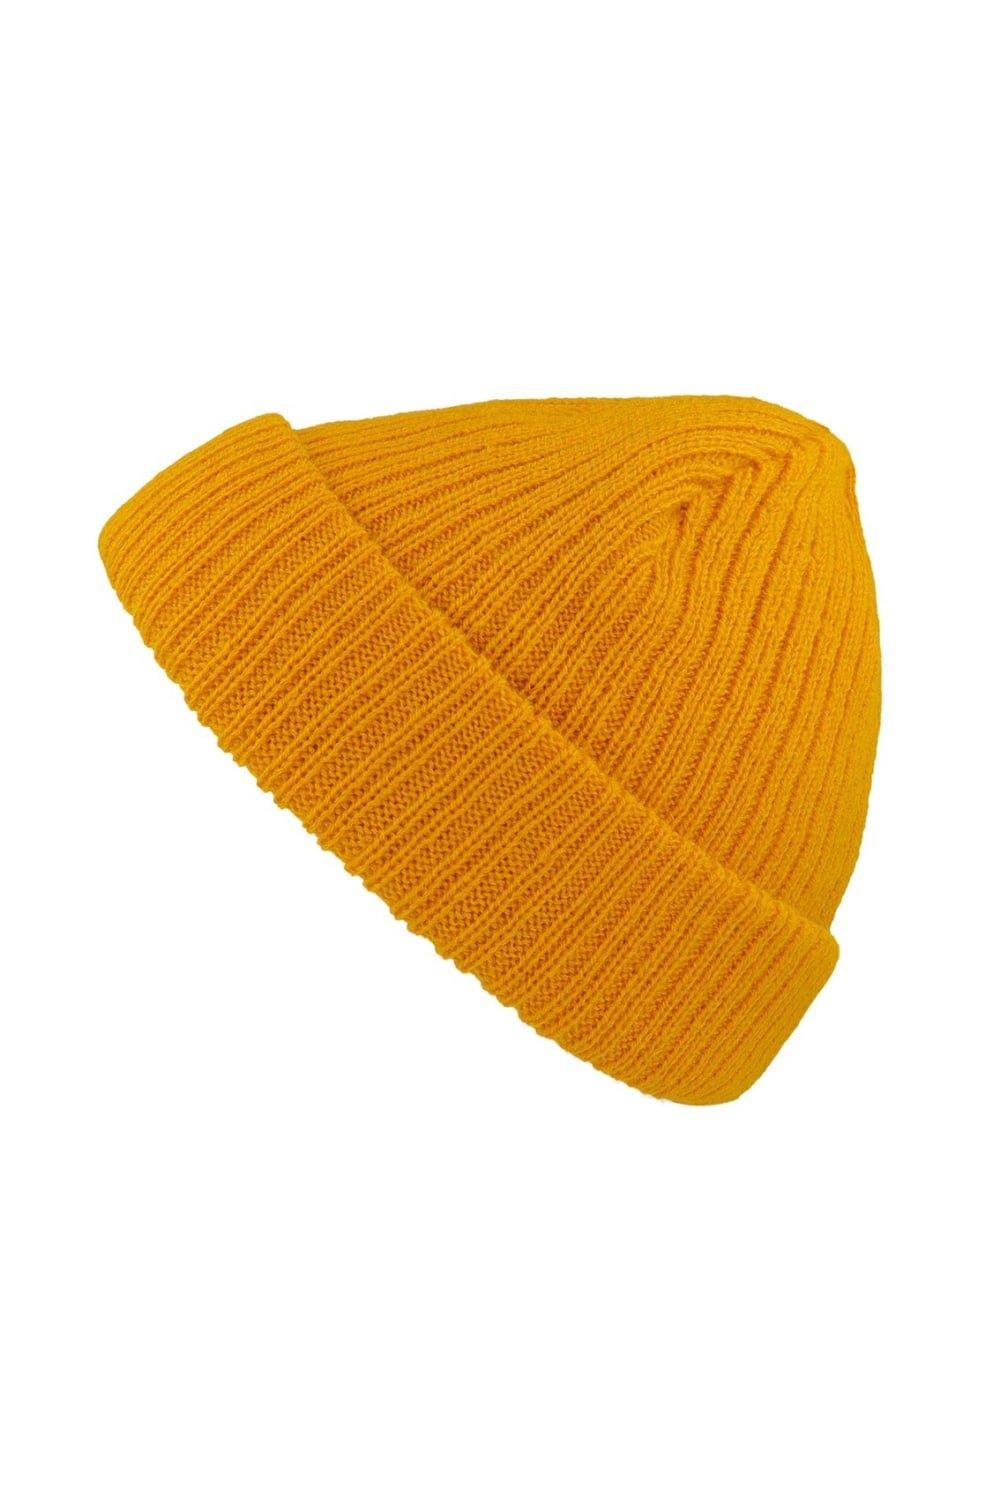 Короткая шапка Docker с отворотом Atlantis, желтый шапка бини 100%акрил размер свободный серый горчичный